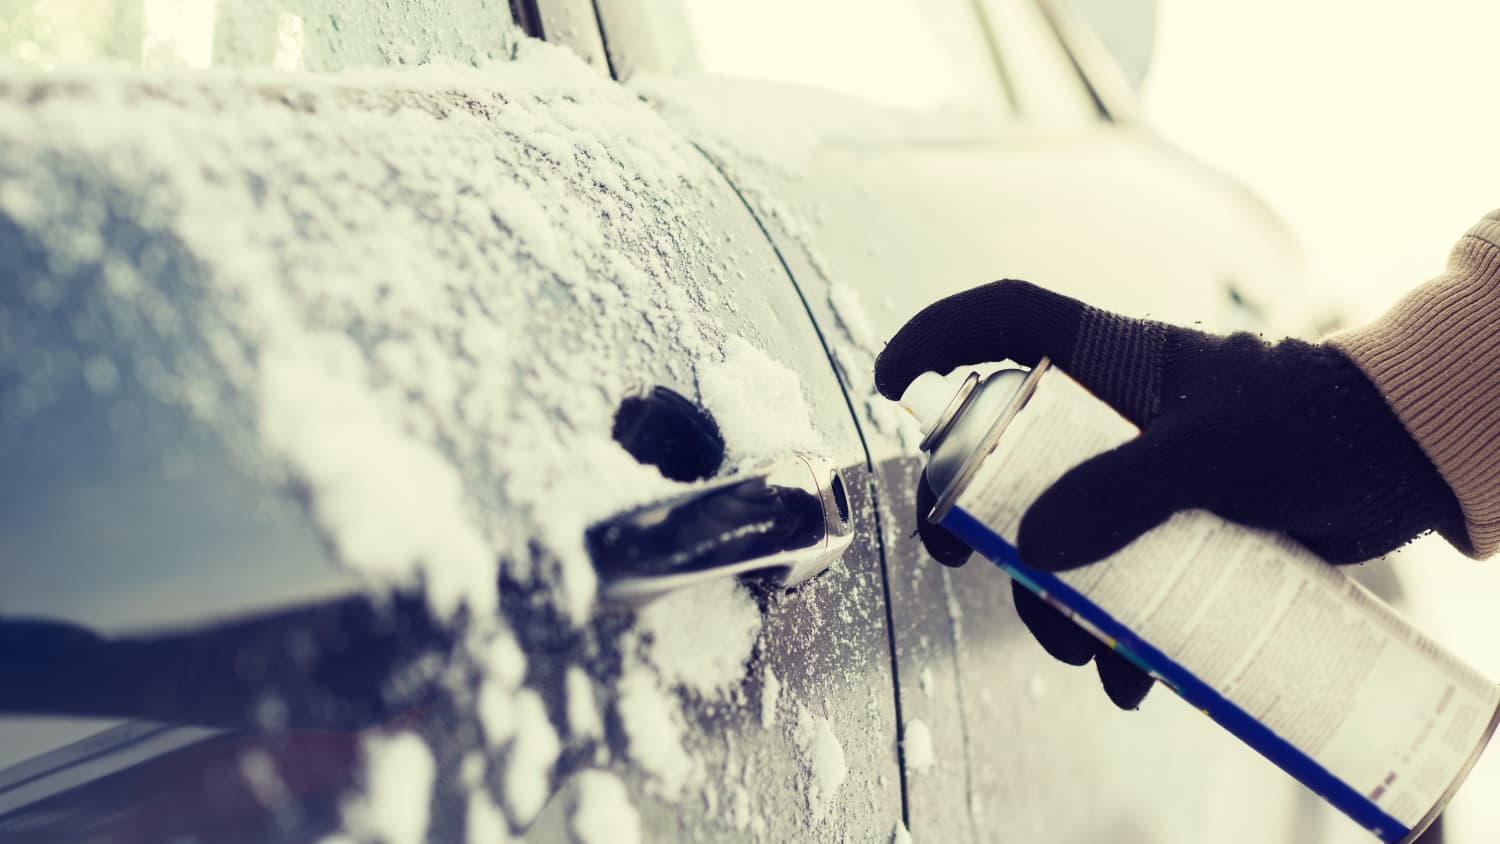 Autotür zugefroren: Was hilft? Tipps und Hausmittel